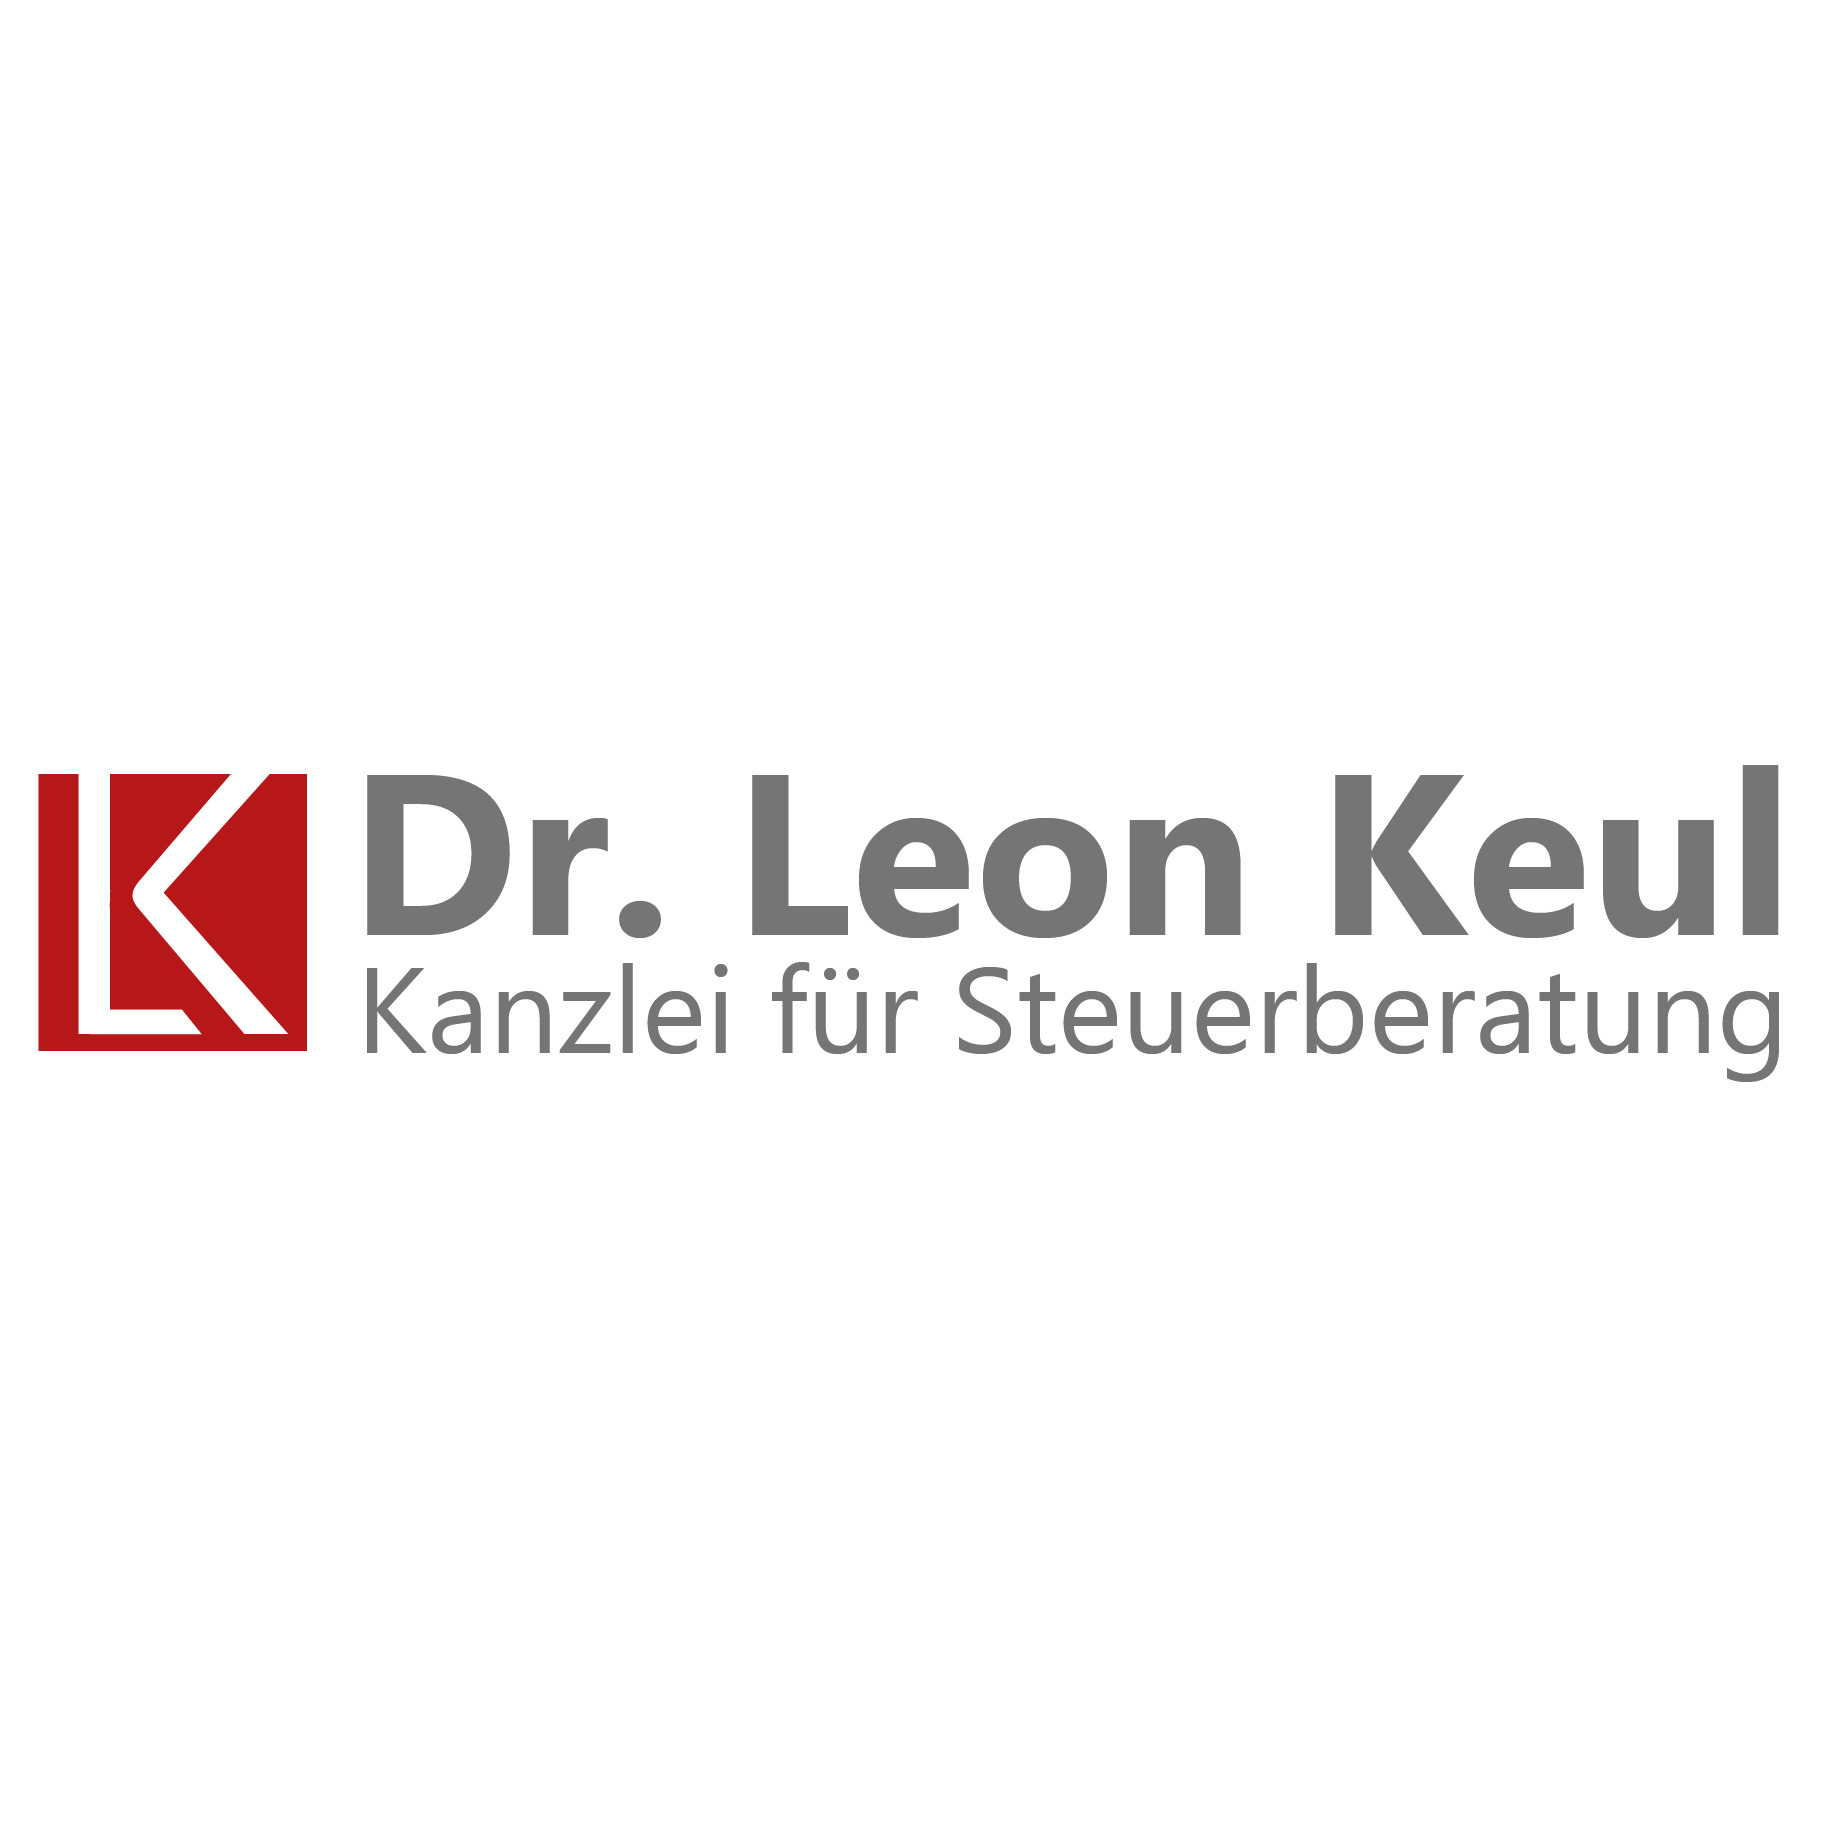 Dr. Leon Keul - Kanzlei für Steuerberatung